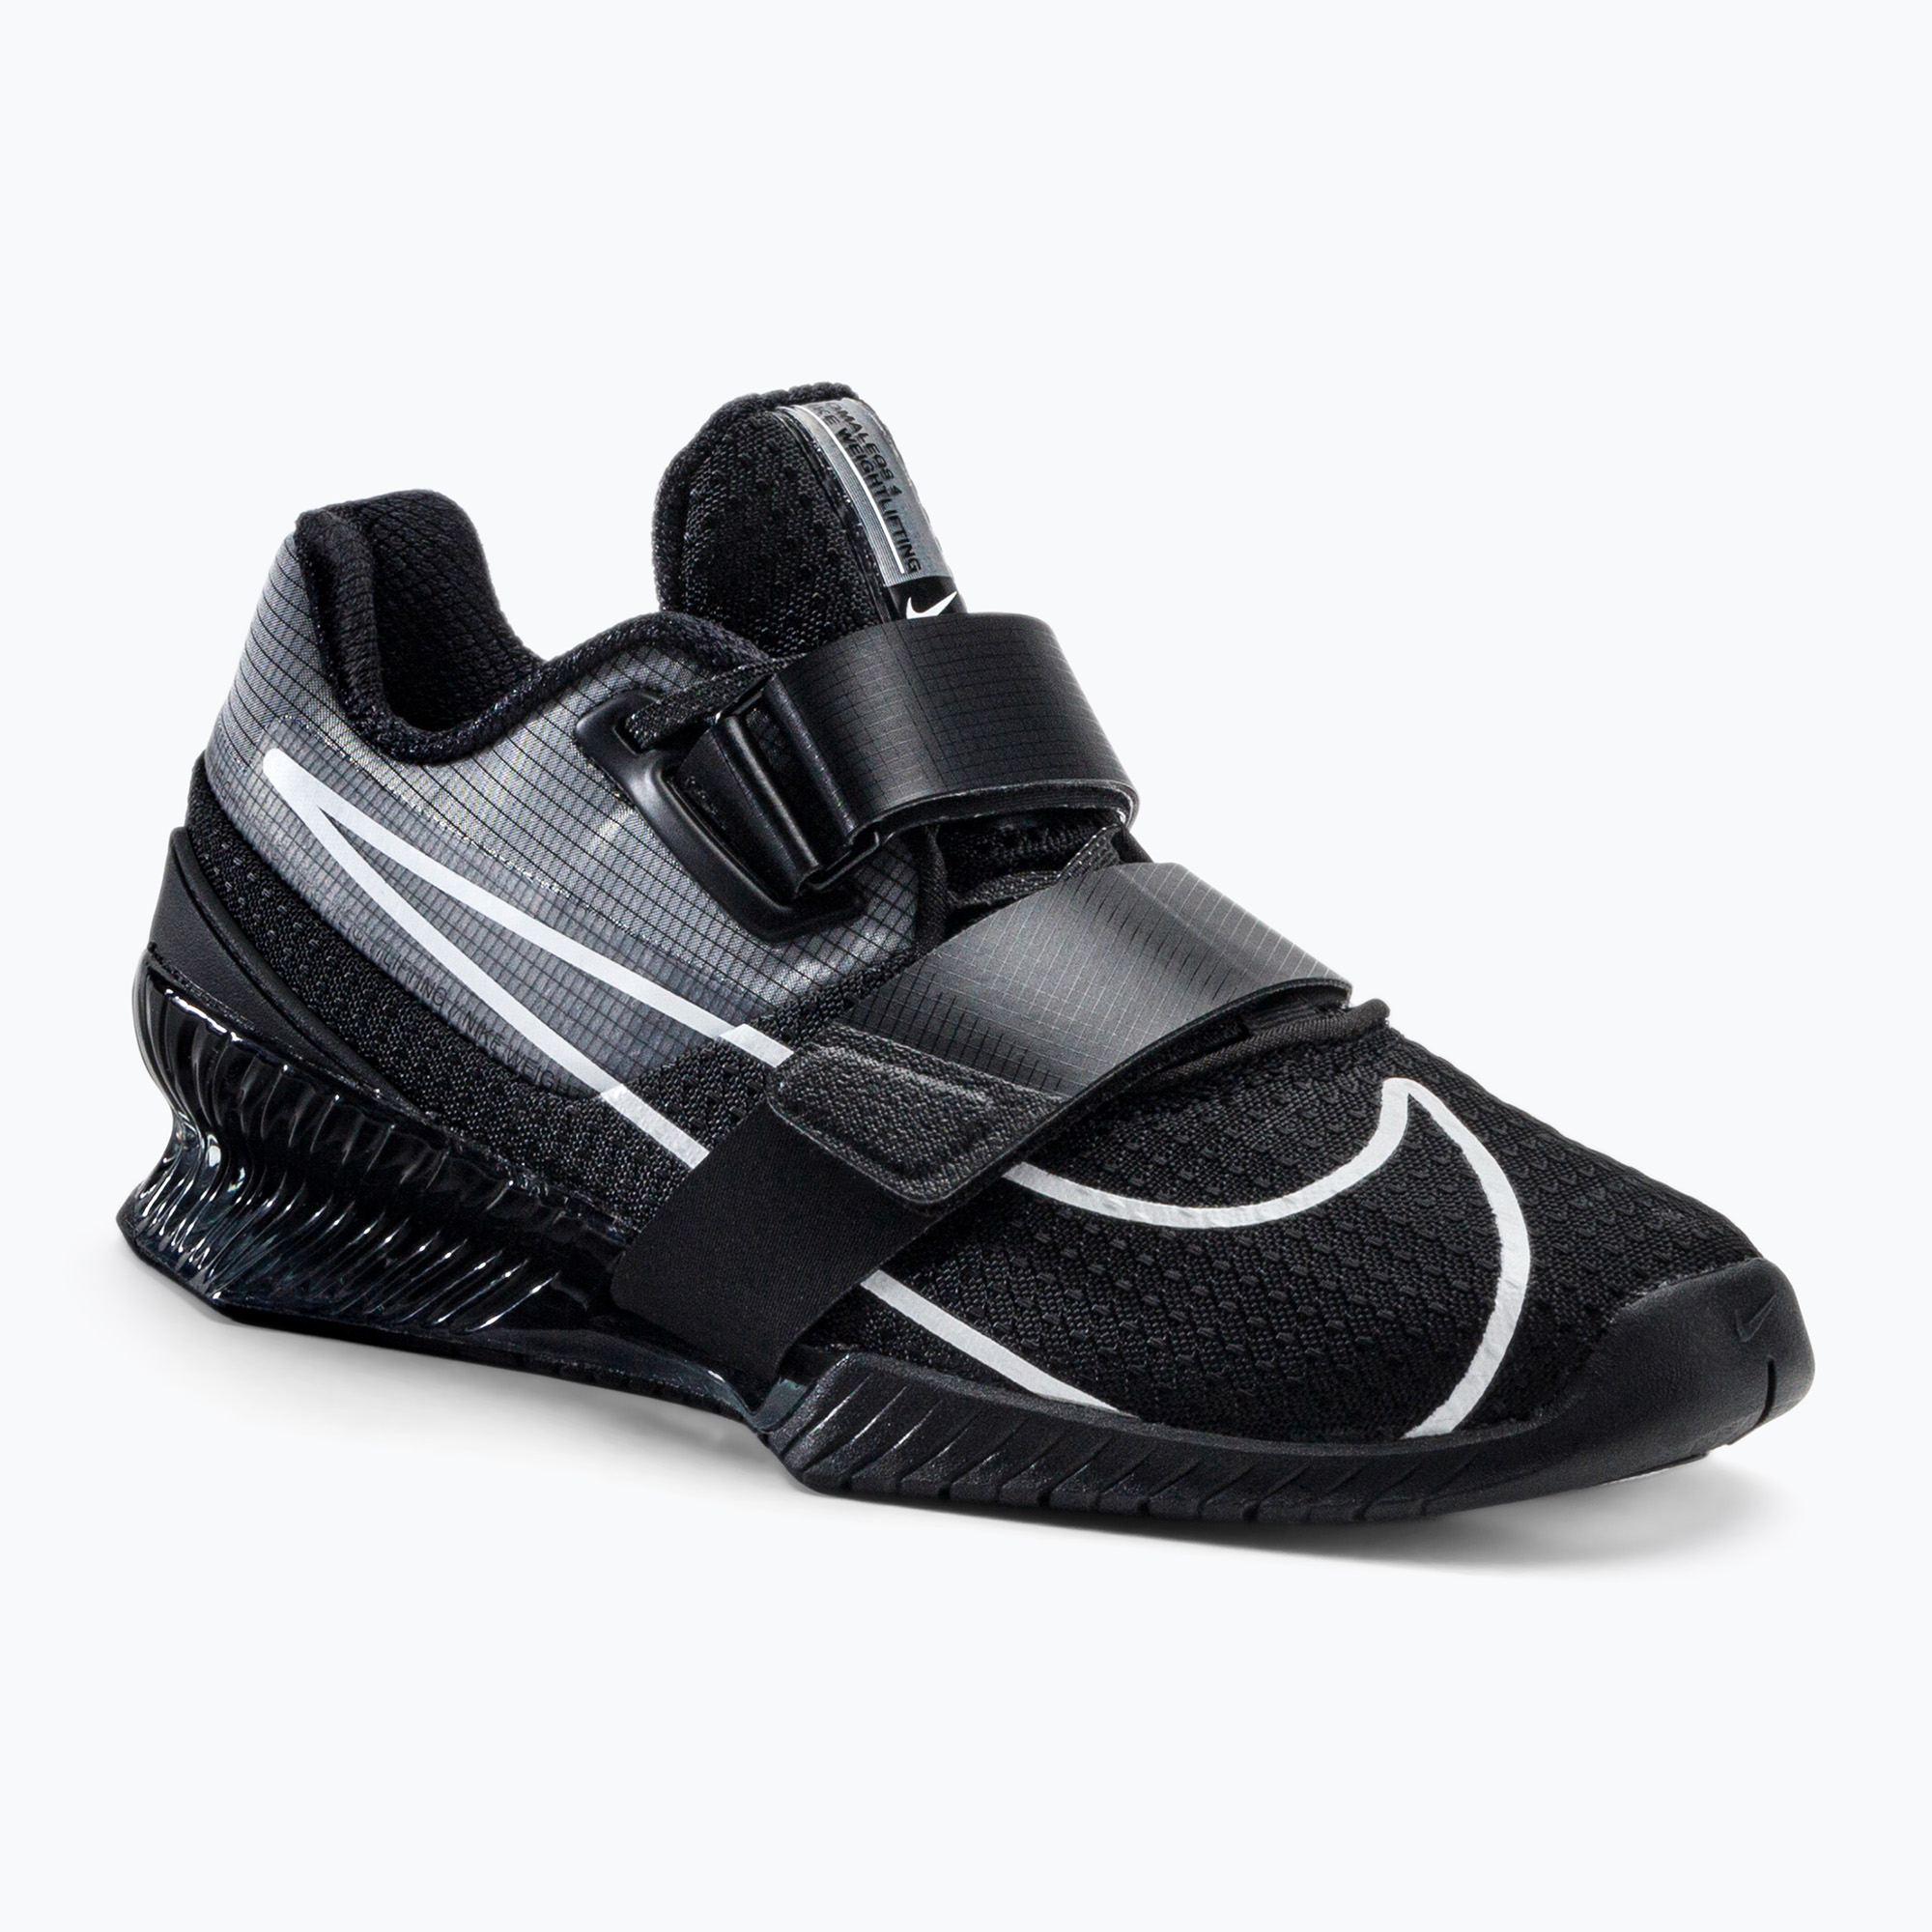 Nike Romaleos 4 haltere pantofi de haltere negru CD3463-010